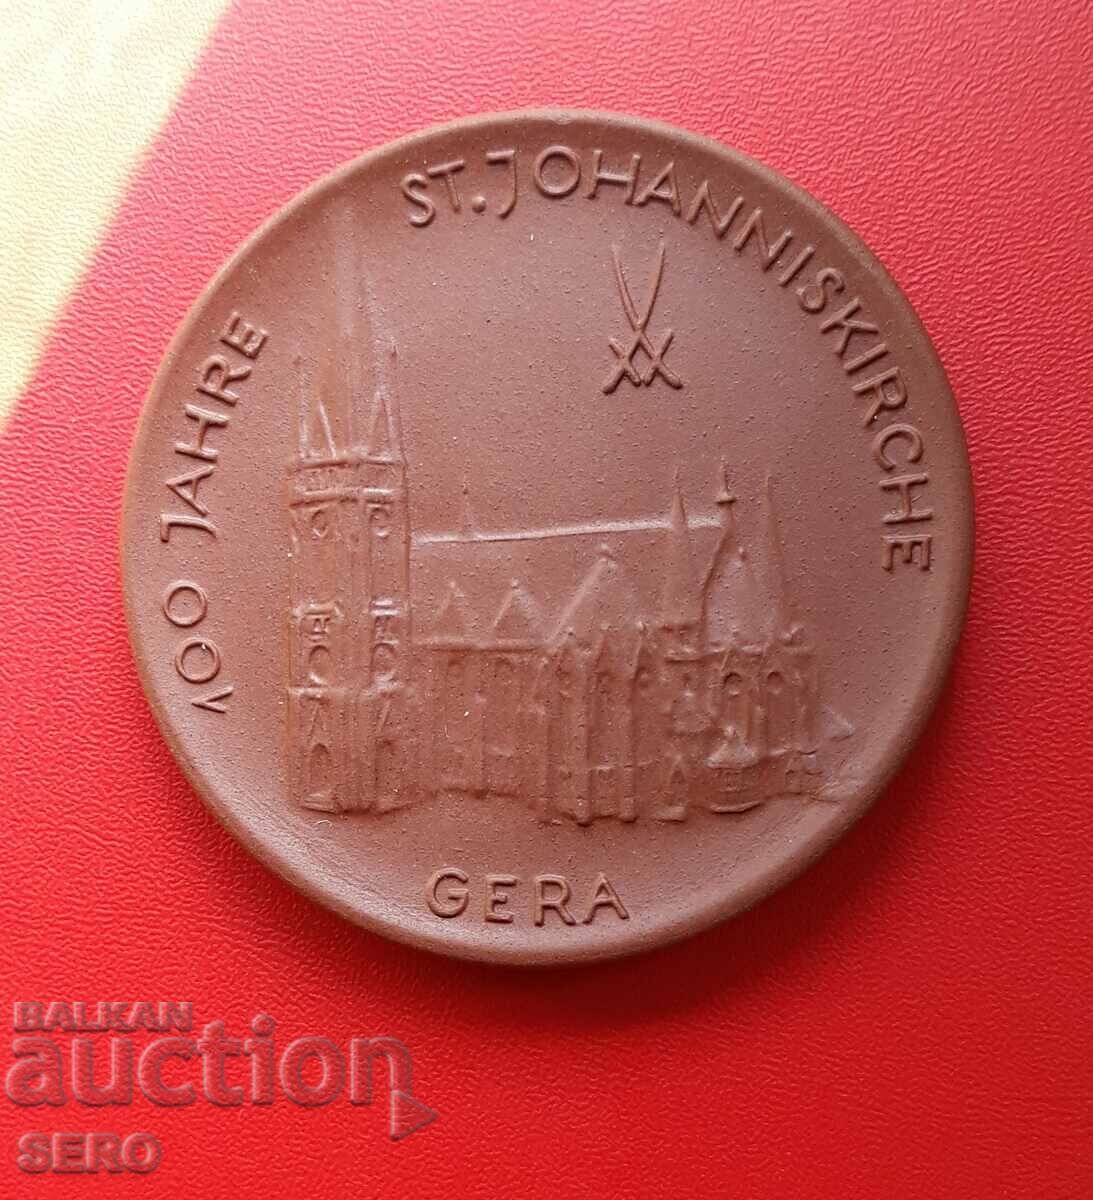 Γερμανία-ΛΔΓ-μετάλλιο από πορσελάνη-100 χρόνια Εκκλησία του Αγίου Ιωάννη στη Γέρα